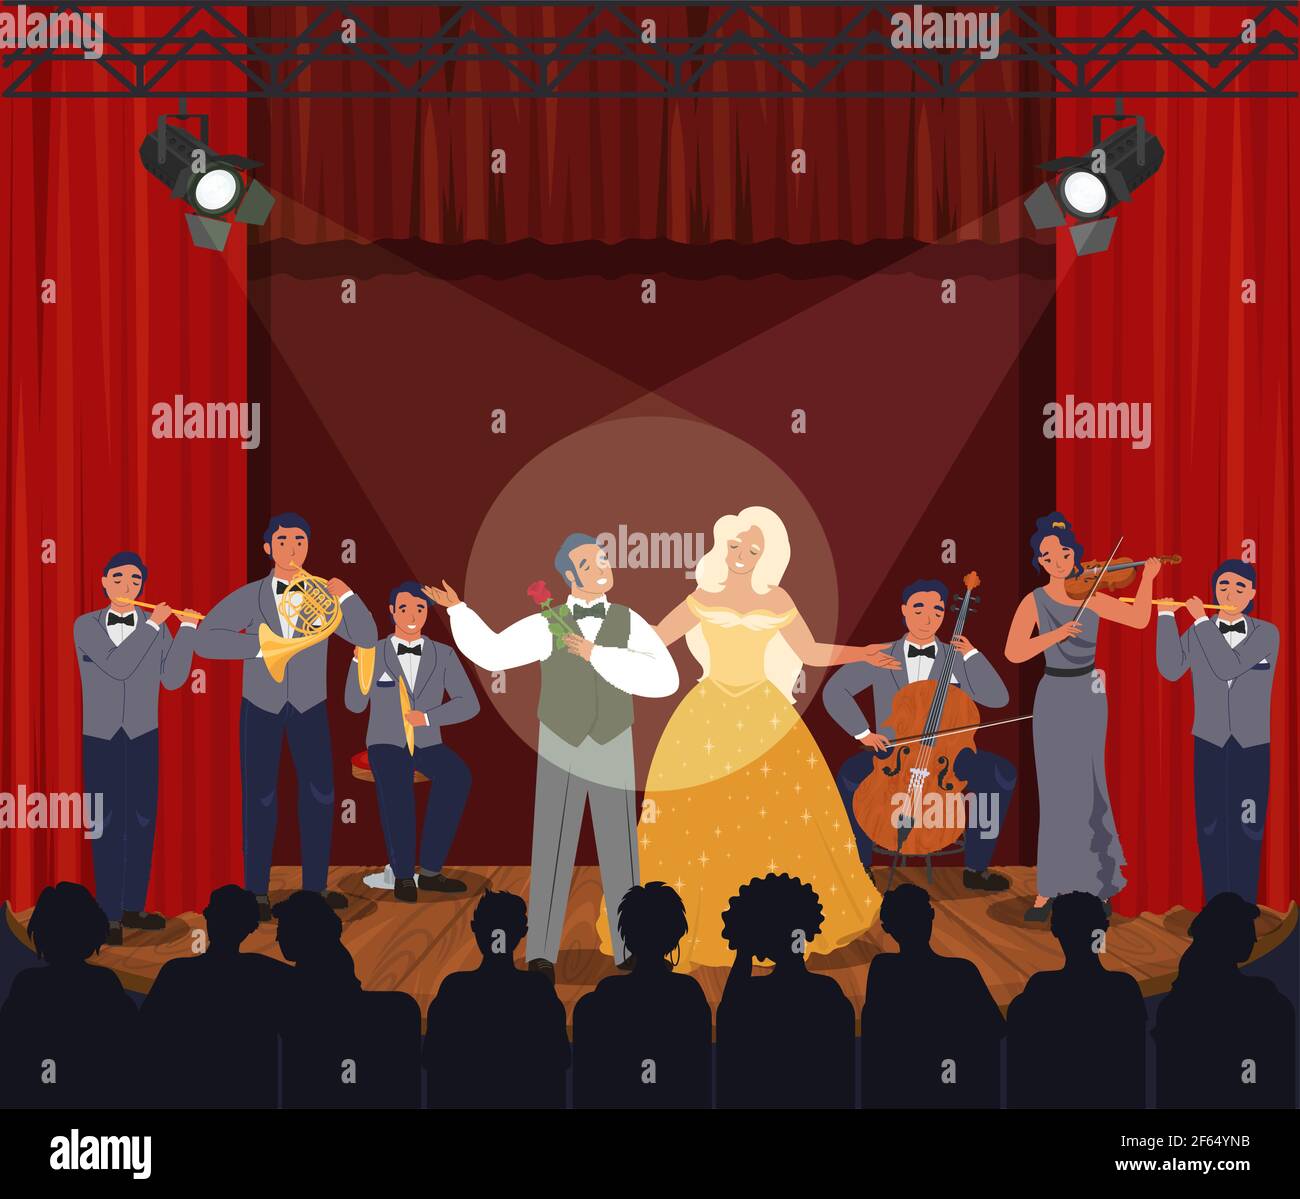 Scène de théâtre d'opéra avec rideaux rouges. Musiciens et acteurs sur scène, illustration vectorielle. Divertissement. Illustration de Vecteur